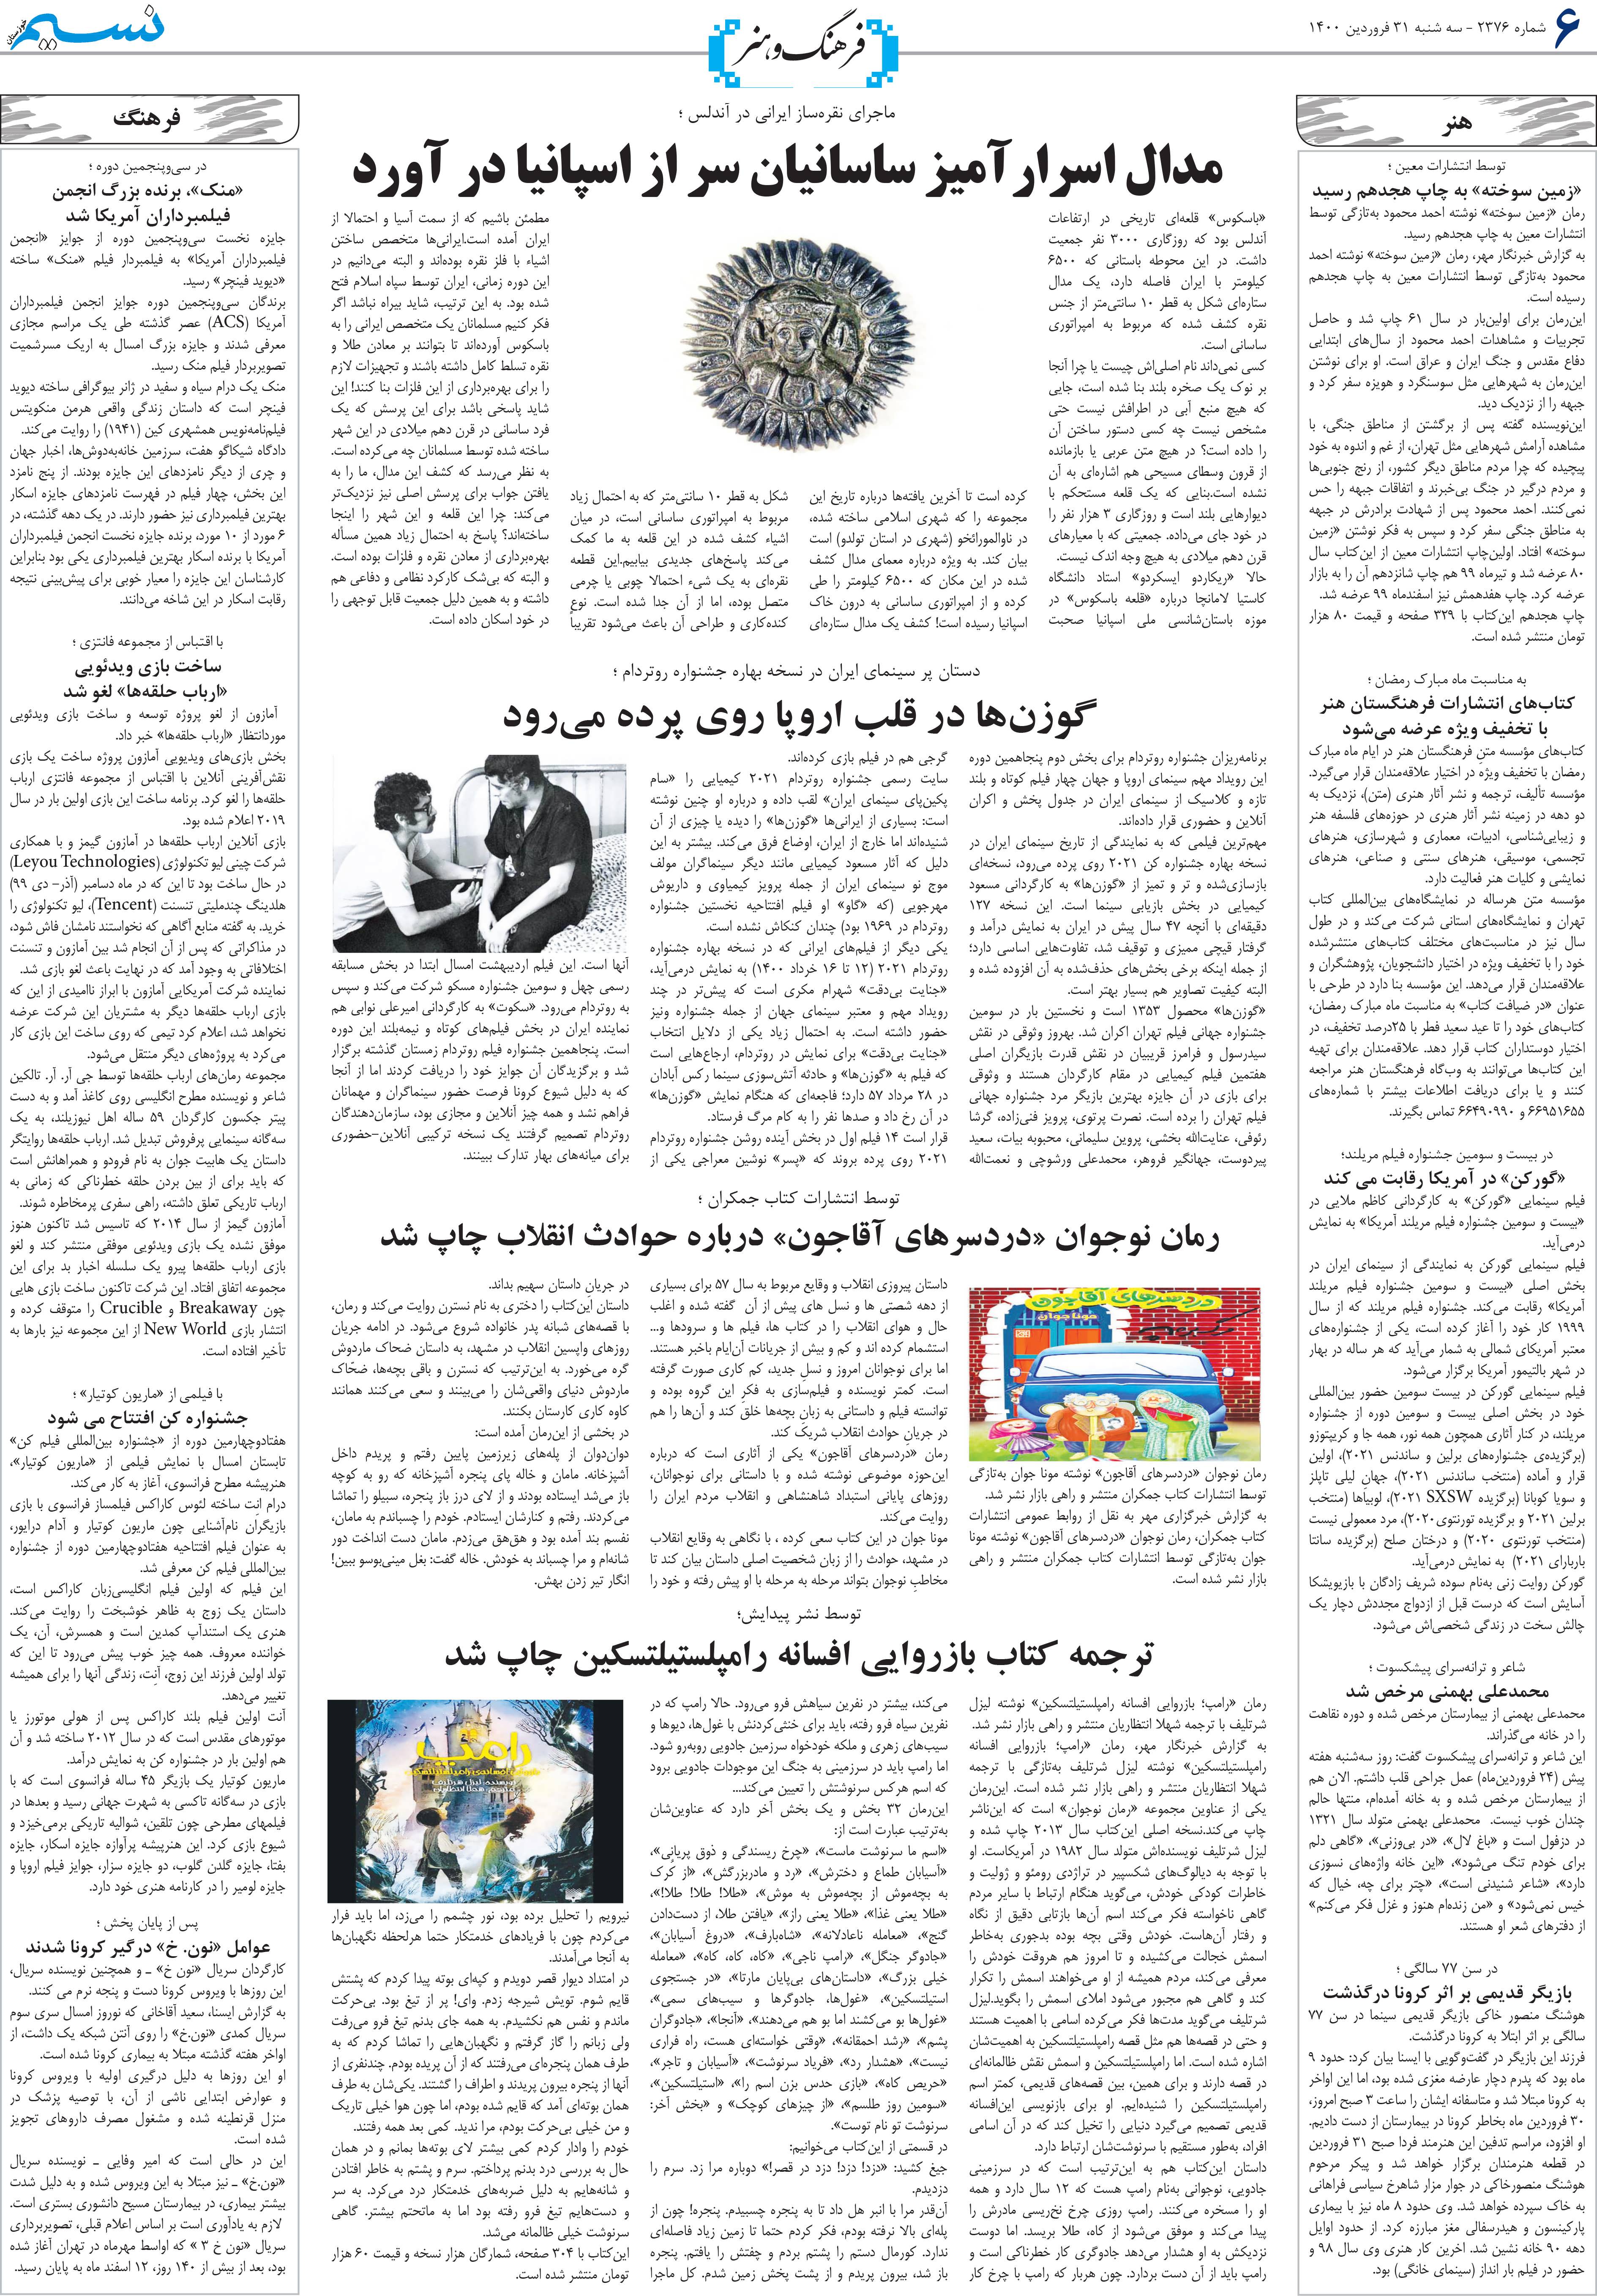 صفحه فرهنگ و هنر روزنامه نسیم شماره 2376